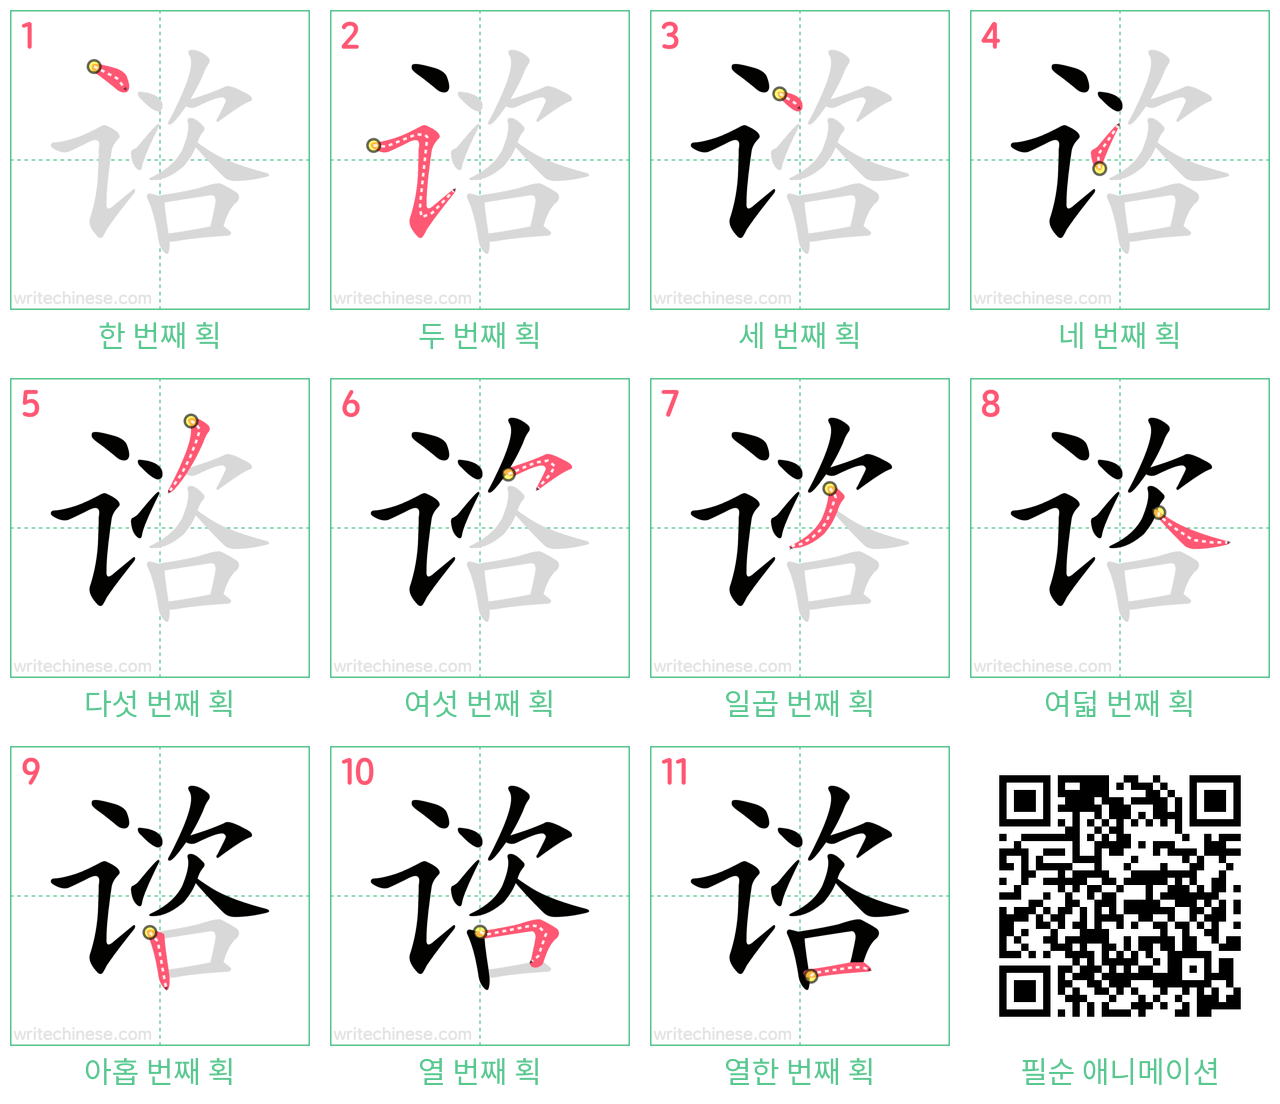 谘 step-by-step stroke order diagrams